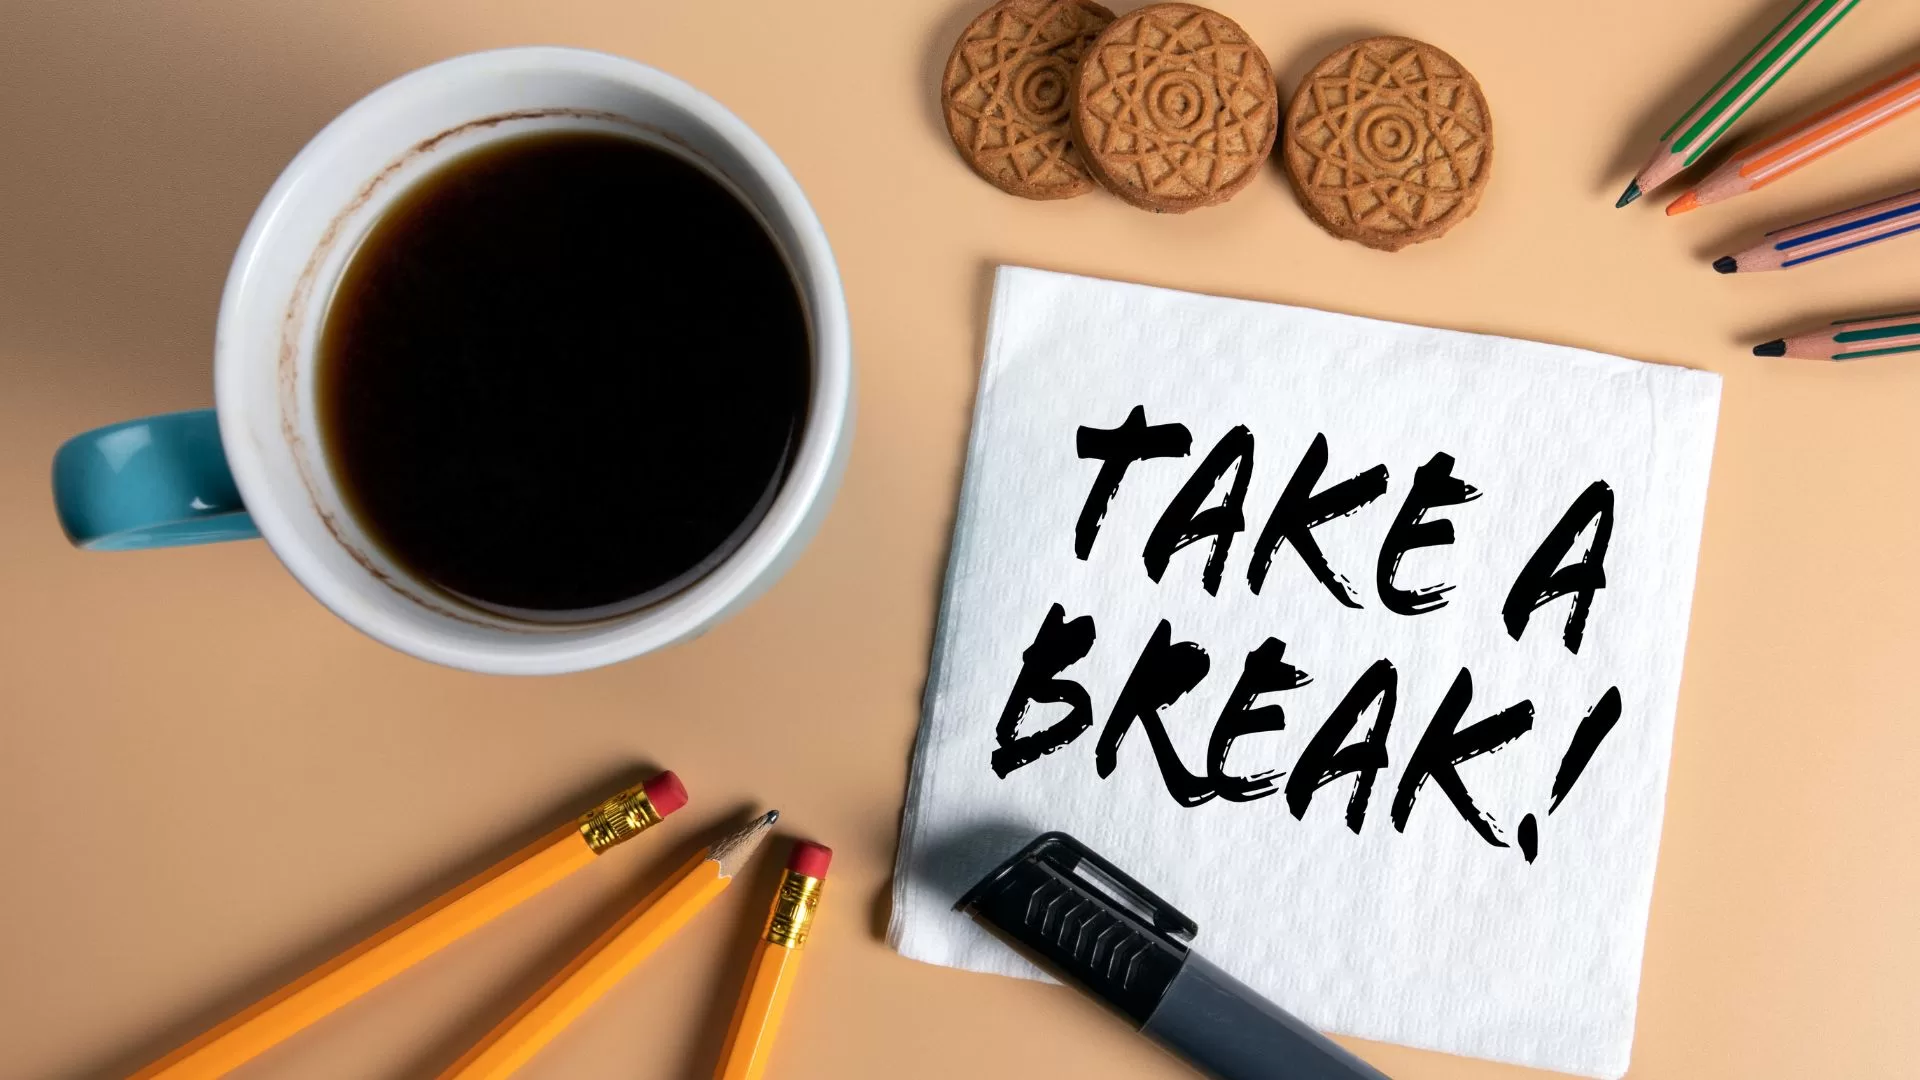 Have s rest. Картинки take a Break. Taking a Break. Логотип take a Break. Study Break.